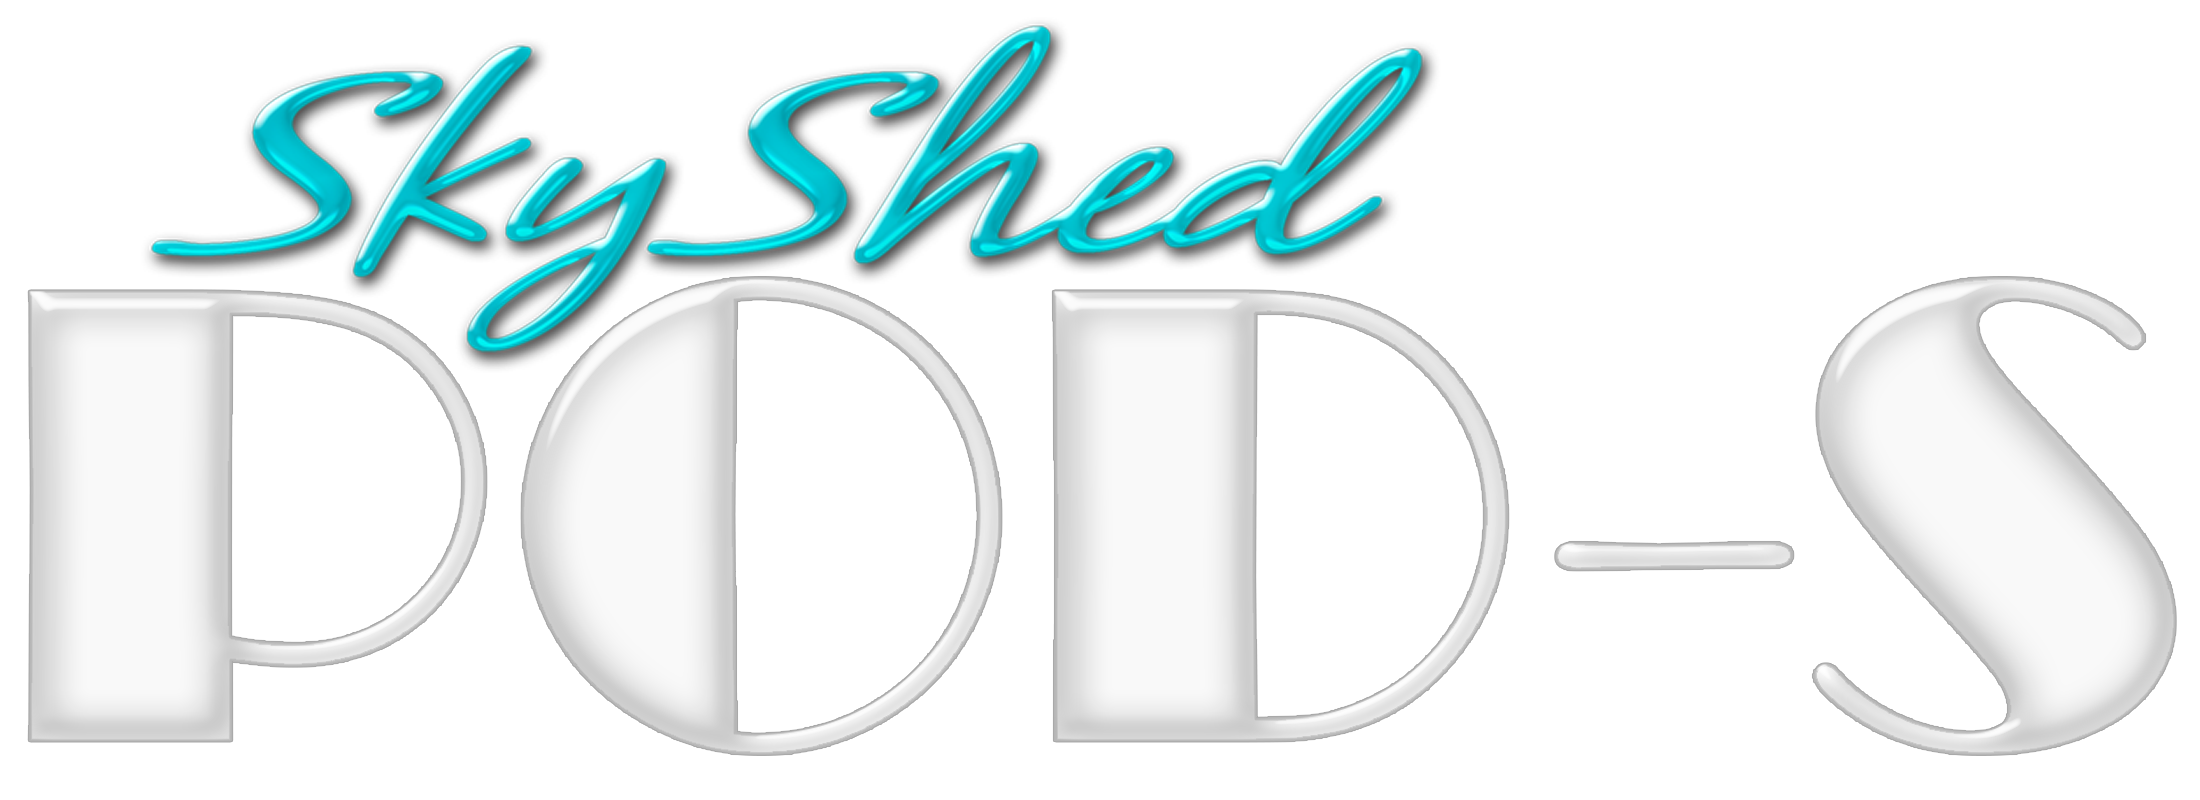 SkyShed POD logo for dome observatory